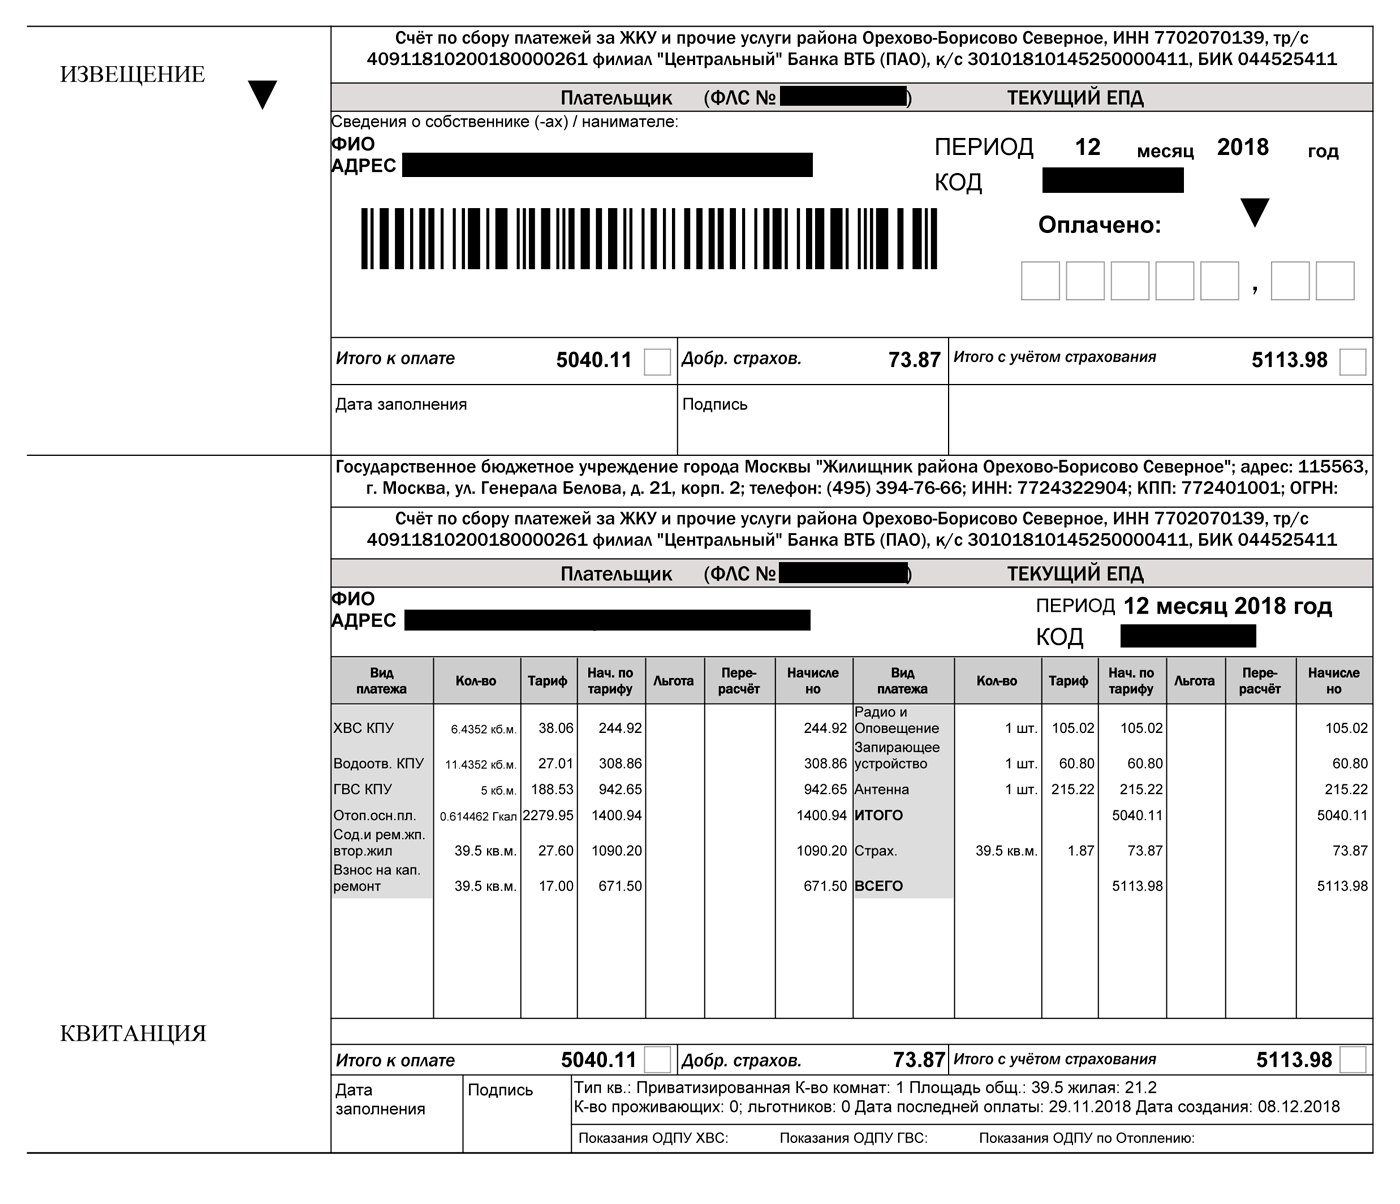 Такие платежные документы отправляют по Москве. Они содержат список услуг, объем потребления и начисления по каждой, общую сумму и стоимость страхования